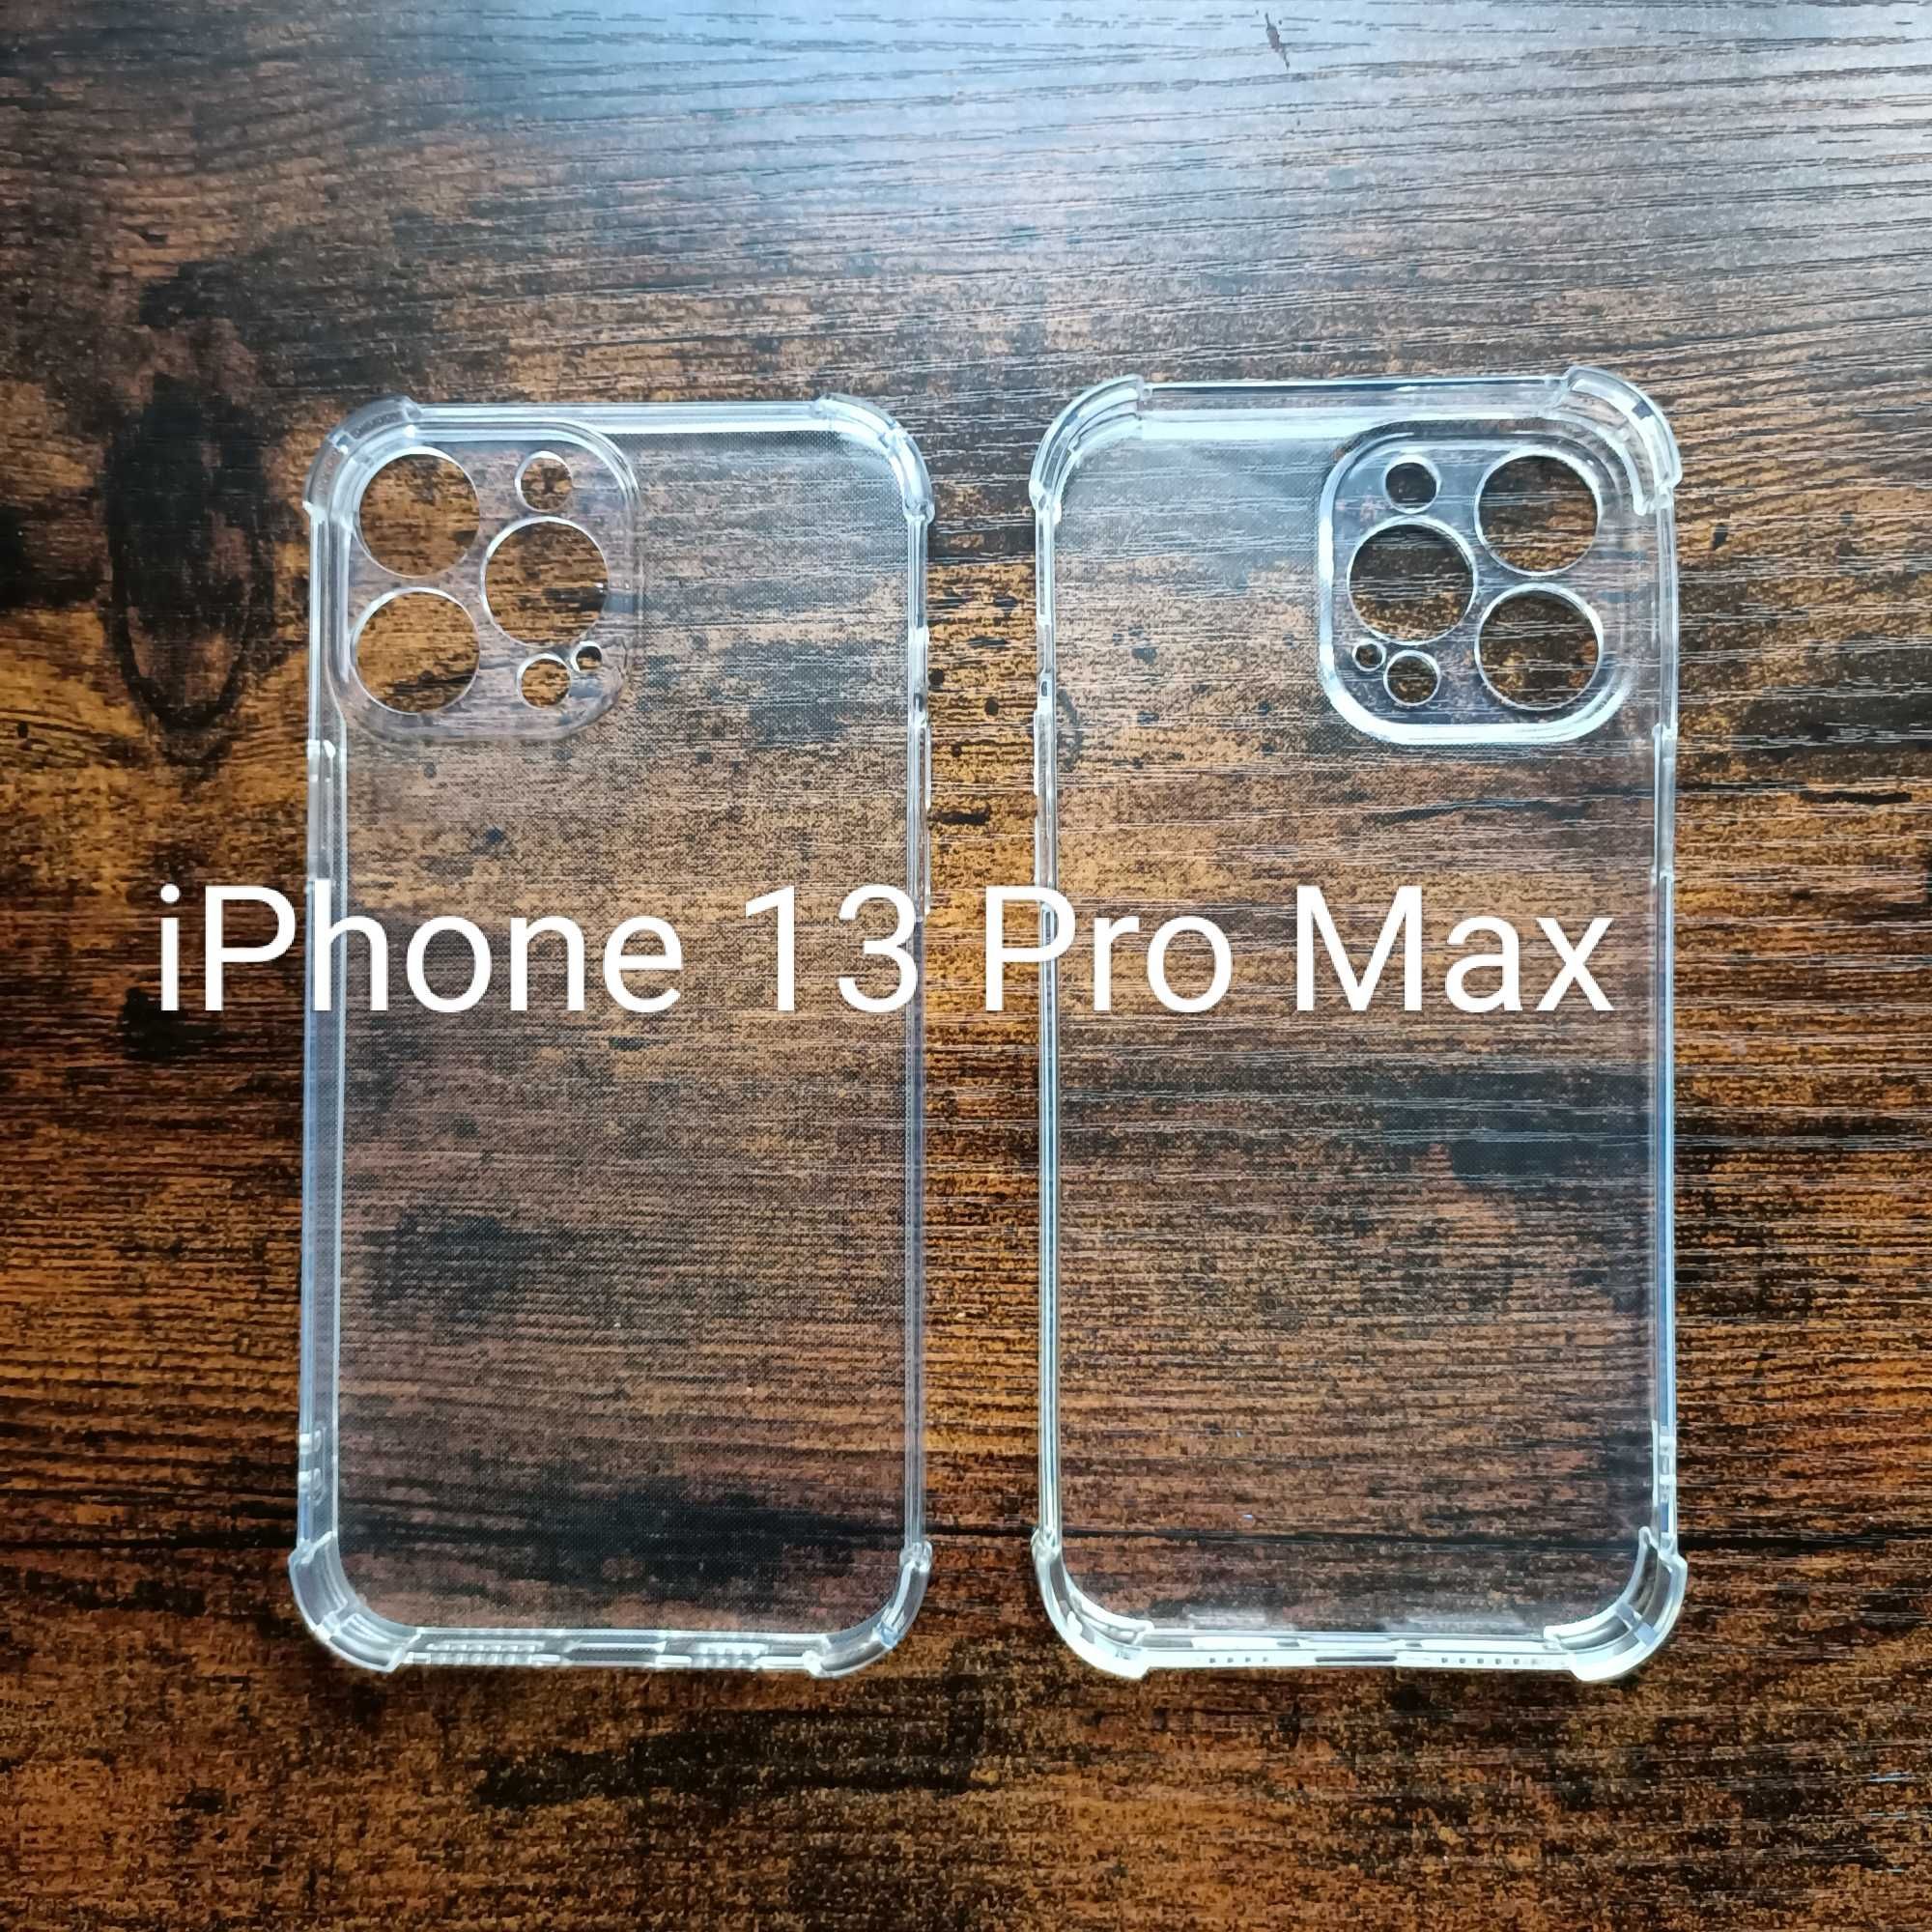 Etui silikonowe - iPhone 13 Pro Max